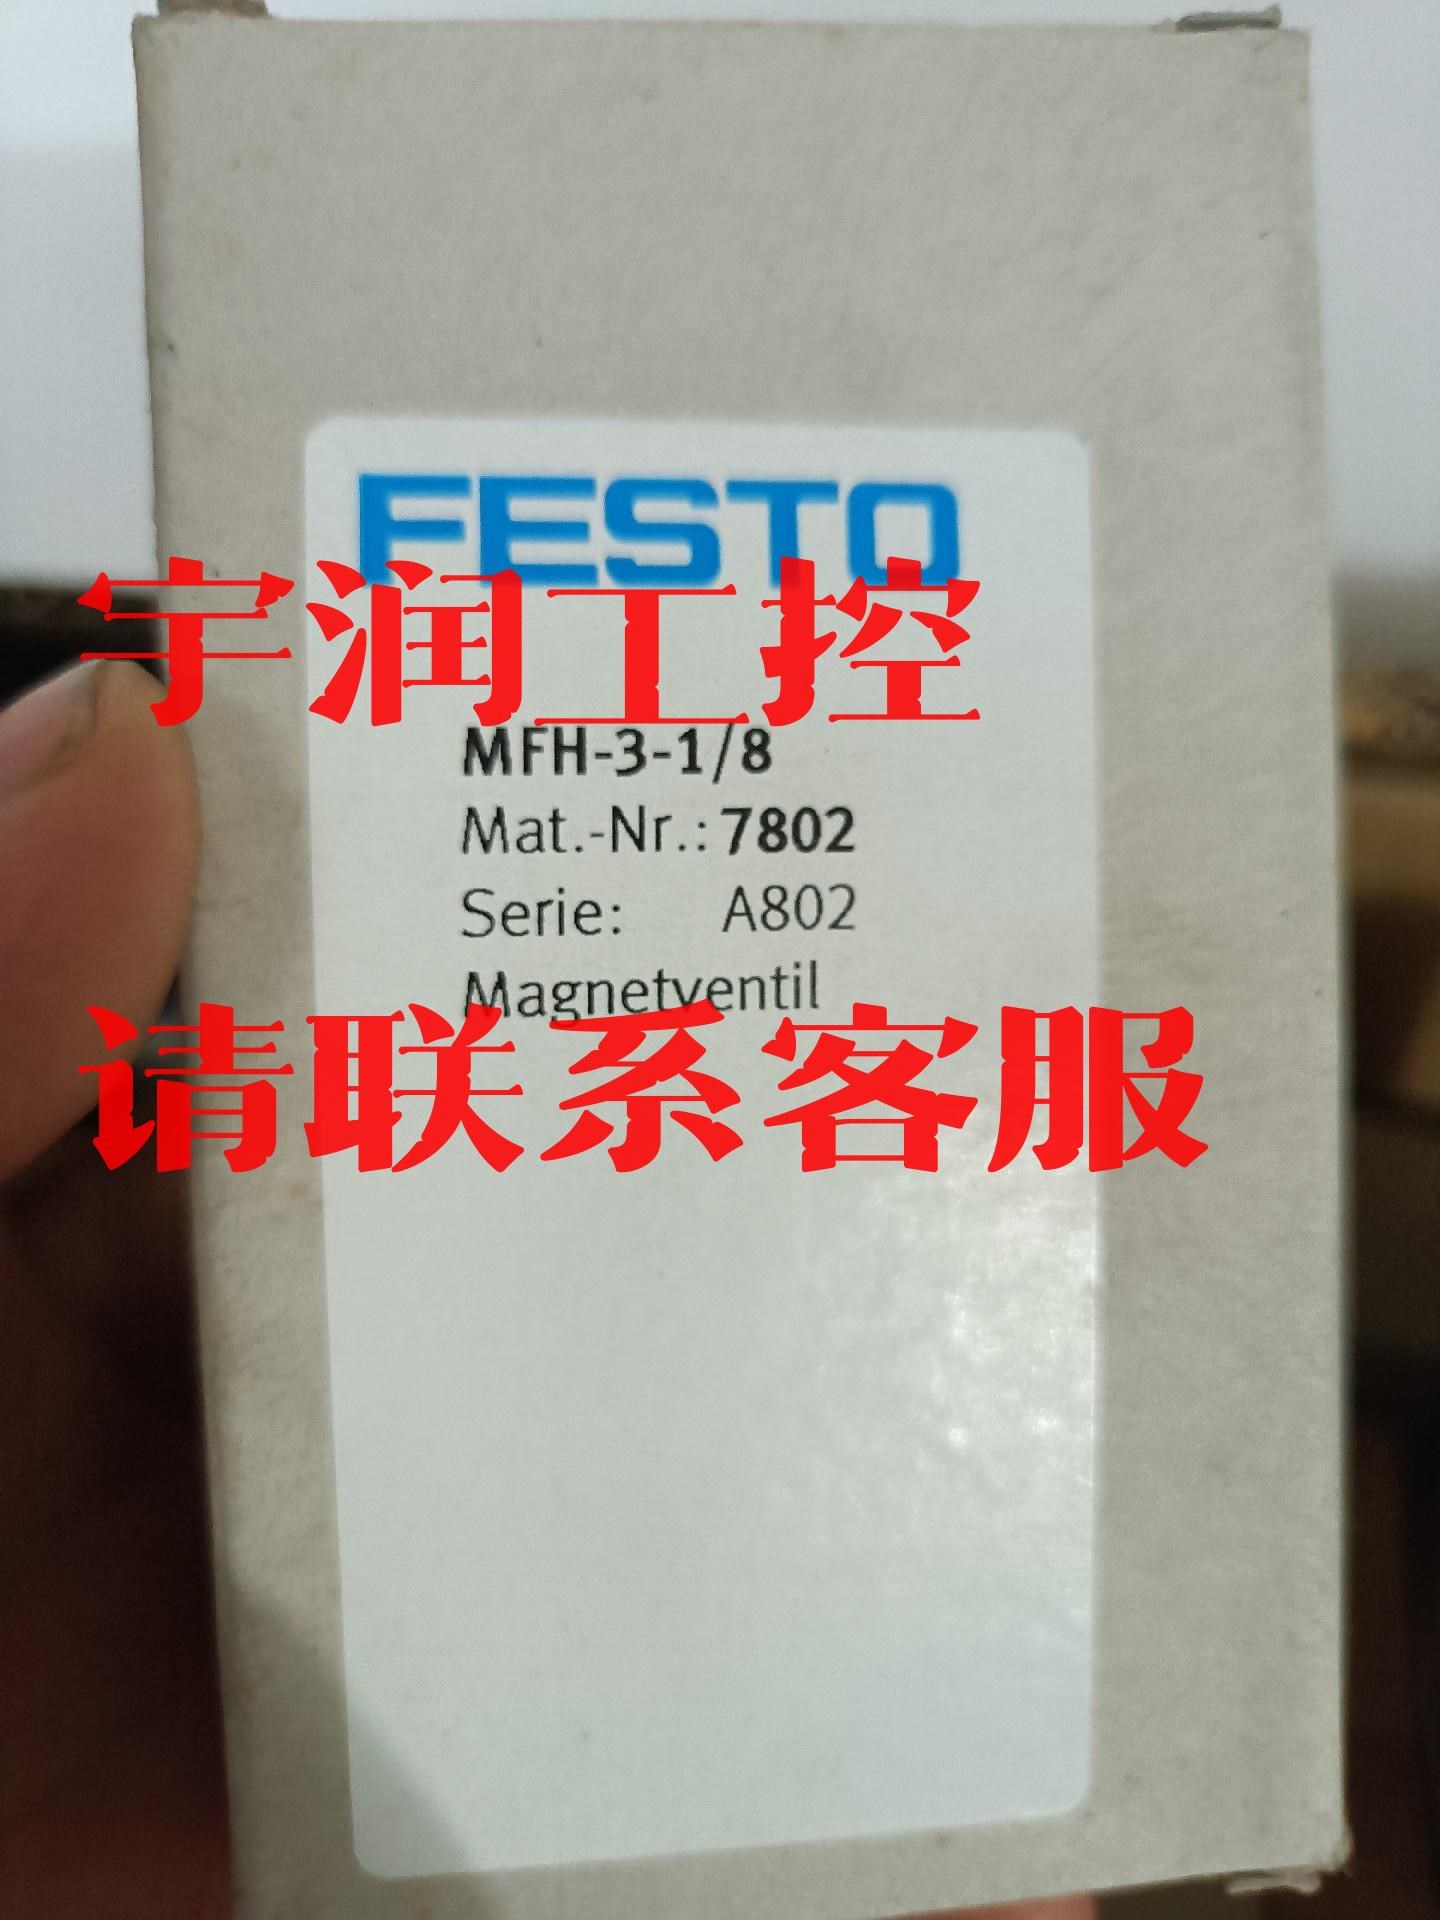 议价出售FESTOMFH-5-3/8-B全新原装